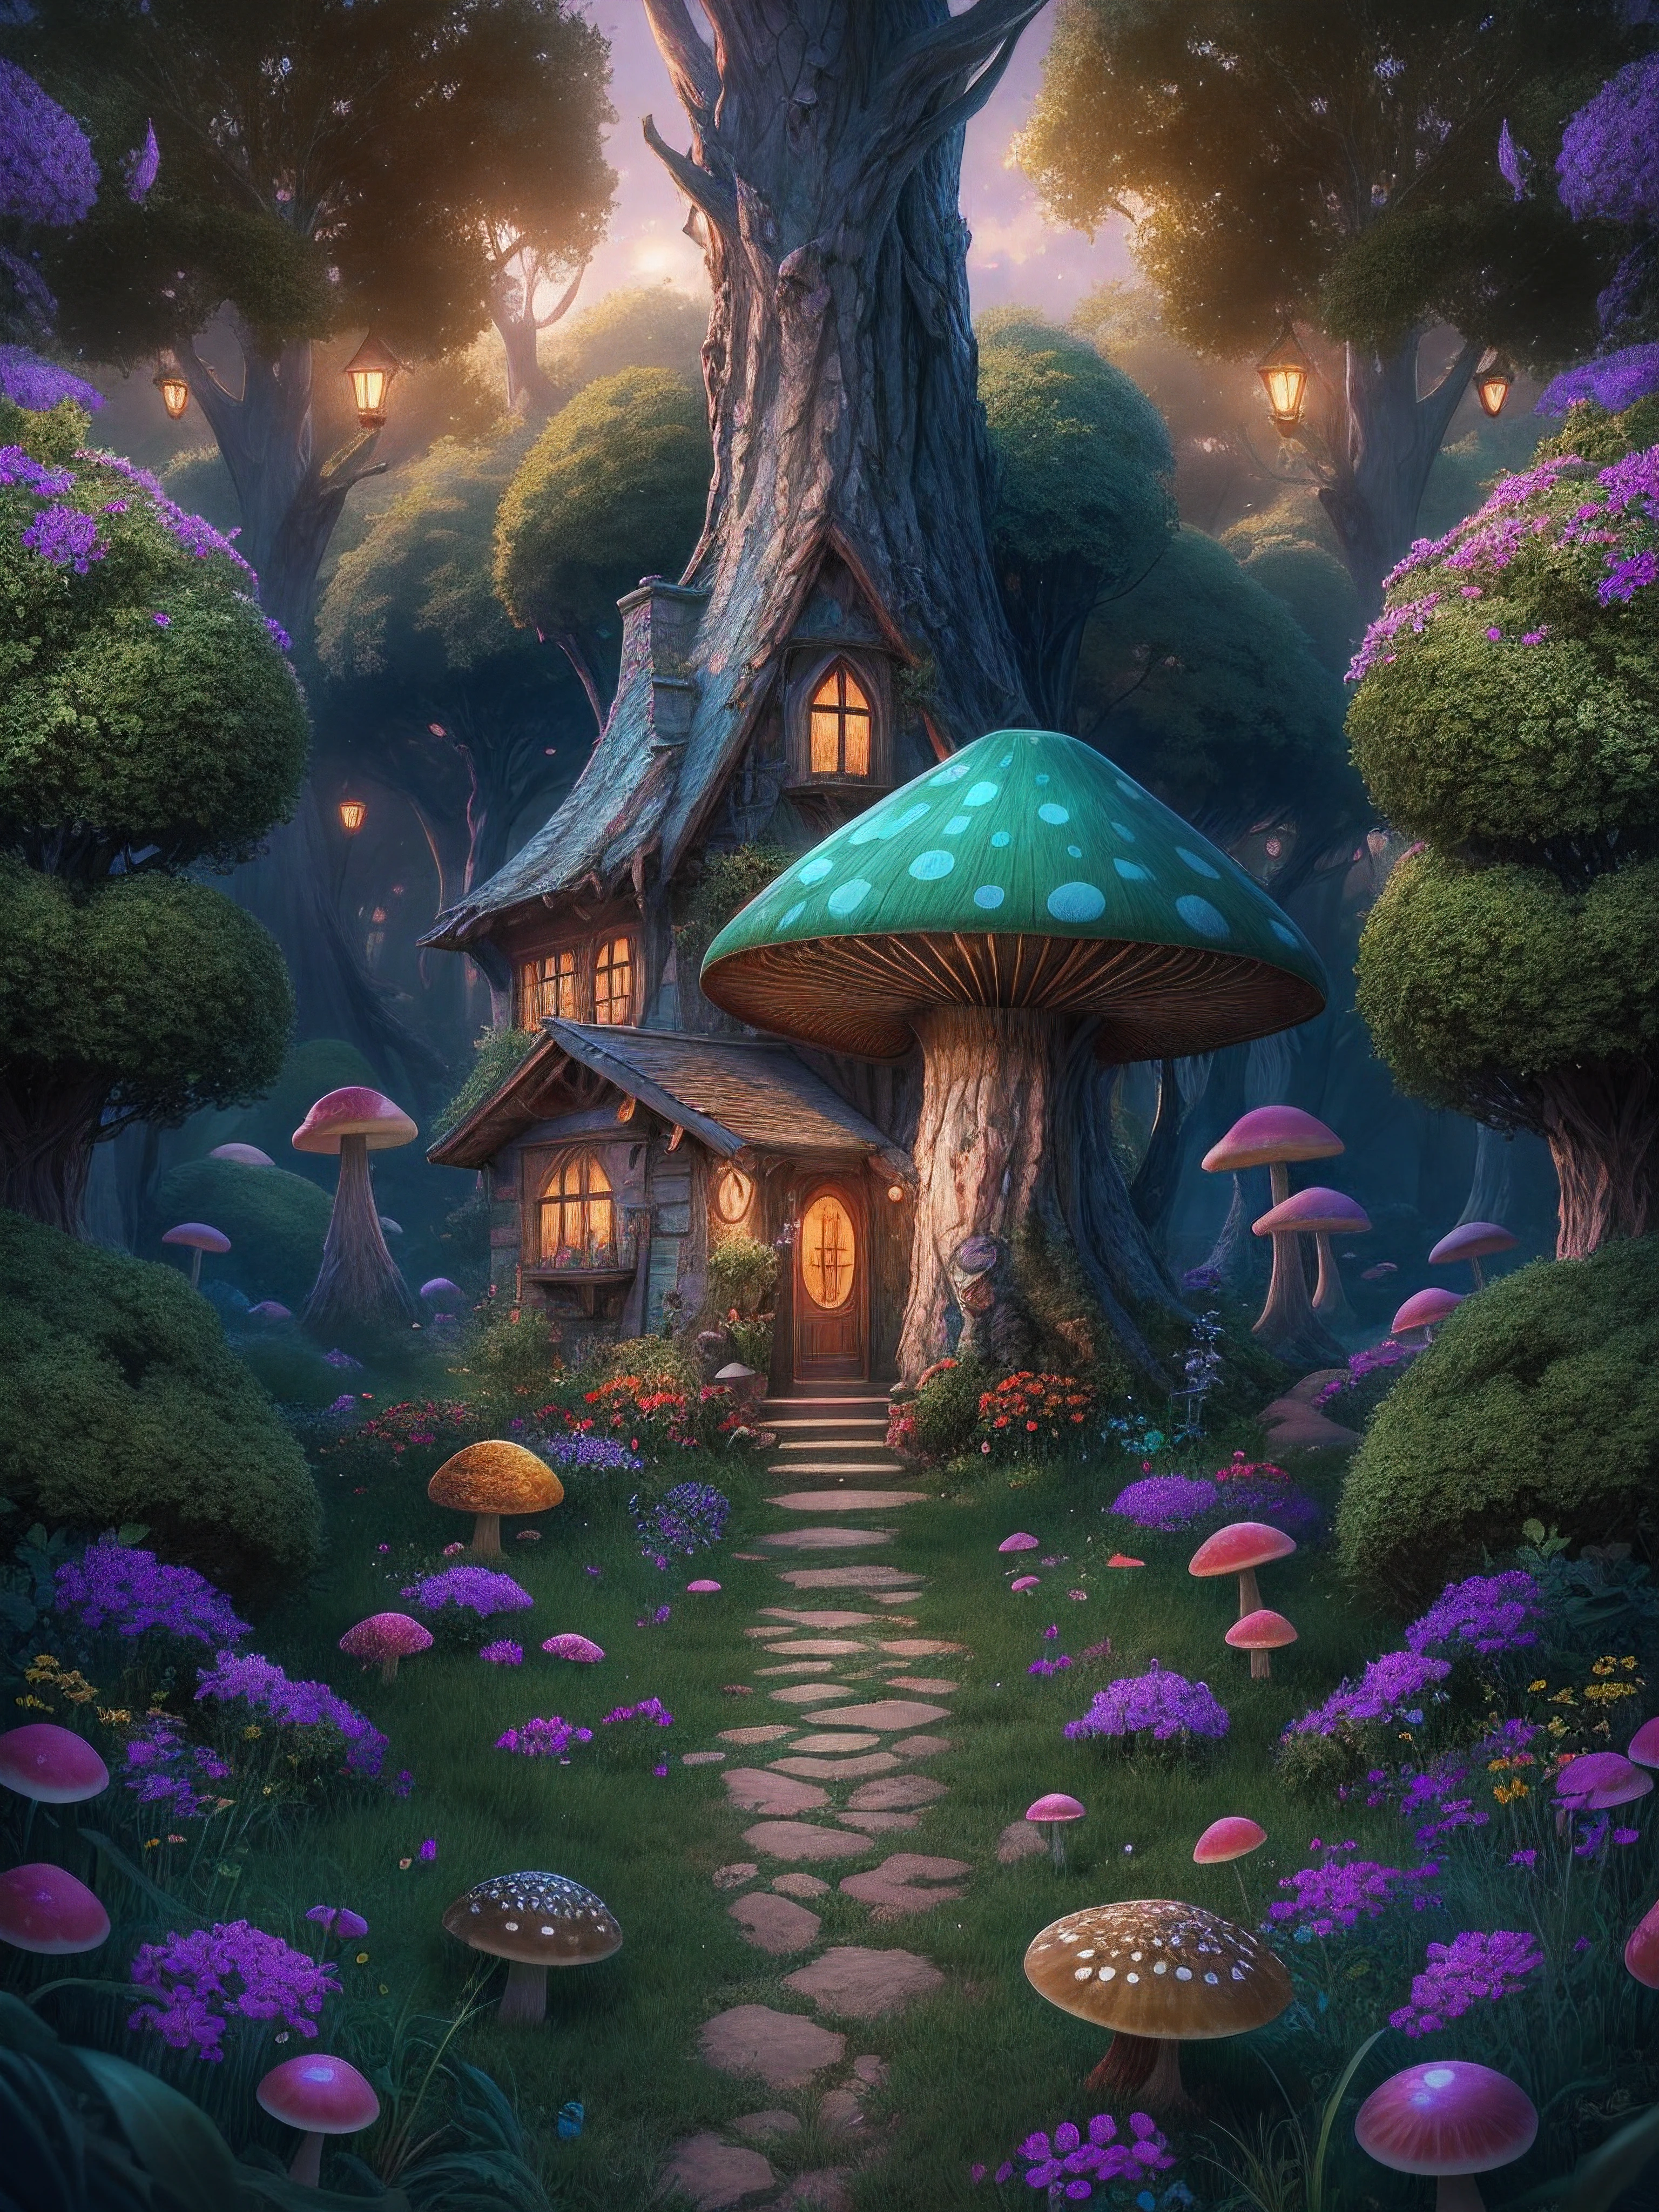 иллюстрация заколдованного леса, с высокими зелеными деревьями, небольшой красочный домик в фантастическом грибе в центре, Магия, центрированный, симметрия, окрашенный, сложный, объемное освещение, красивый, Шедевр с насыщенными глубокими цветами, острый фокус, Ультрадетализированный, астрофотография. Композиция очень подробная., 8К, идеальная композиция., Ультра HD, реалистичный, яркие цвета, очень подробный, UHD-рисунок, ручка и чернила, идеальная композиция, красивый detailed сложный insanely detailed octane render trending on artstation, Художественная фотография 8k, photoреалистичный concept art, мягкий естественный объемный кинематографический идеальный свет